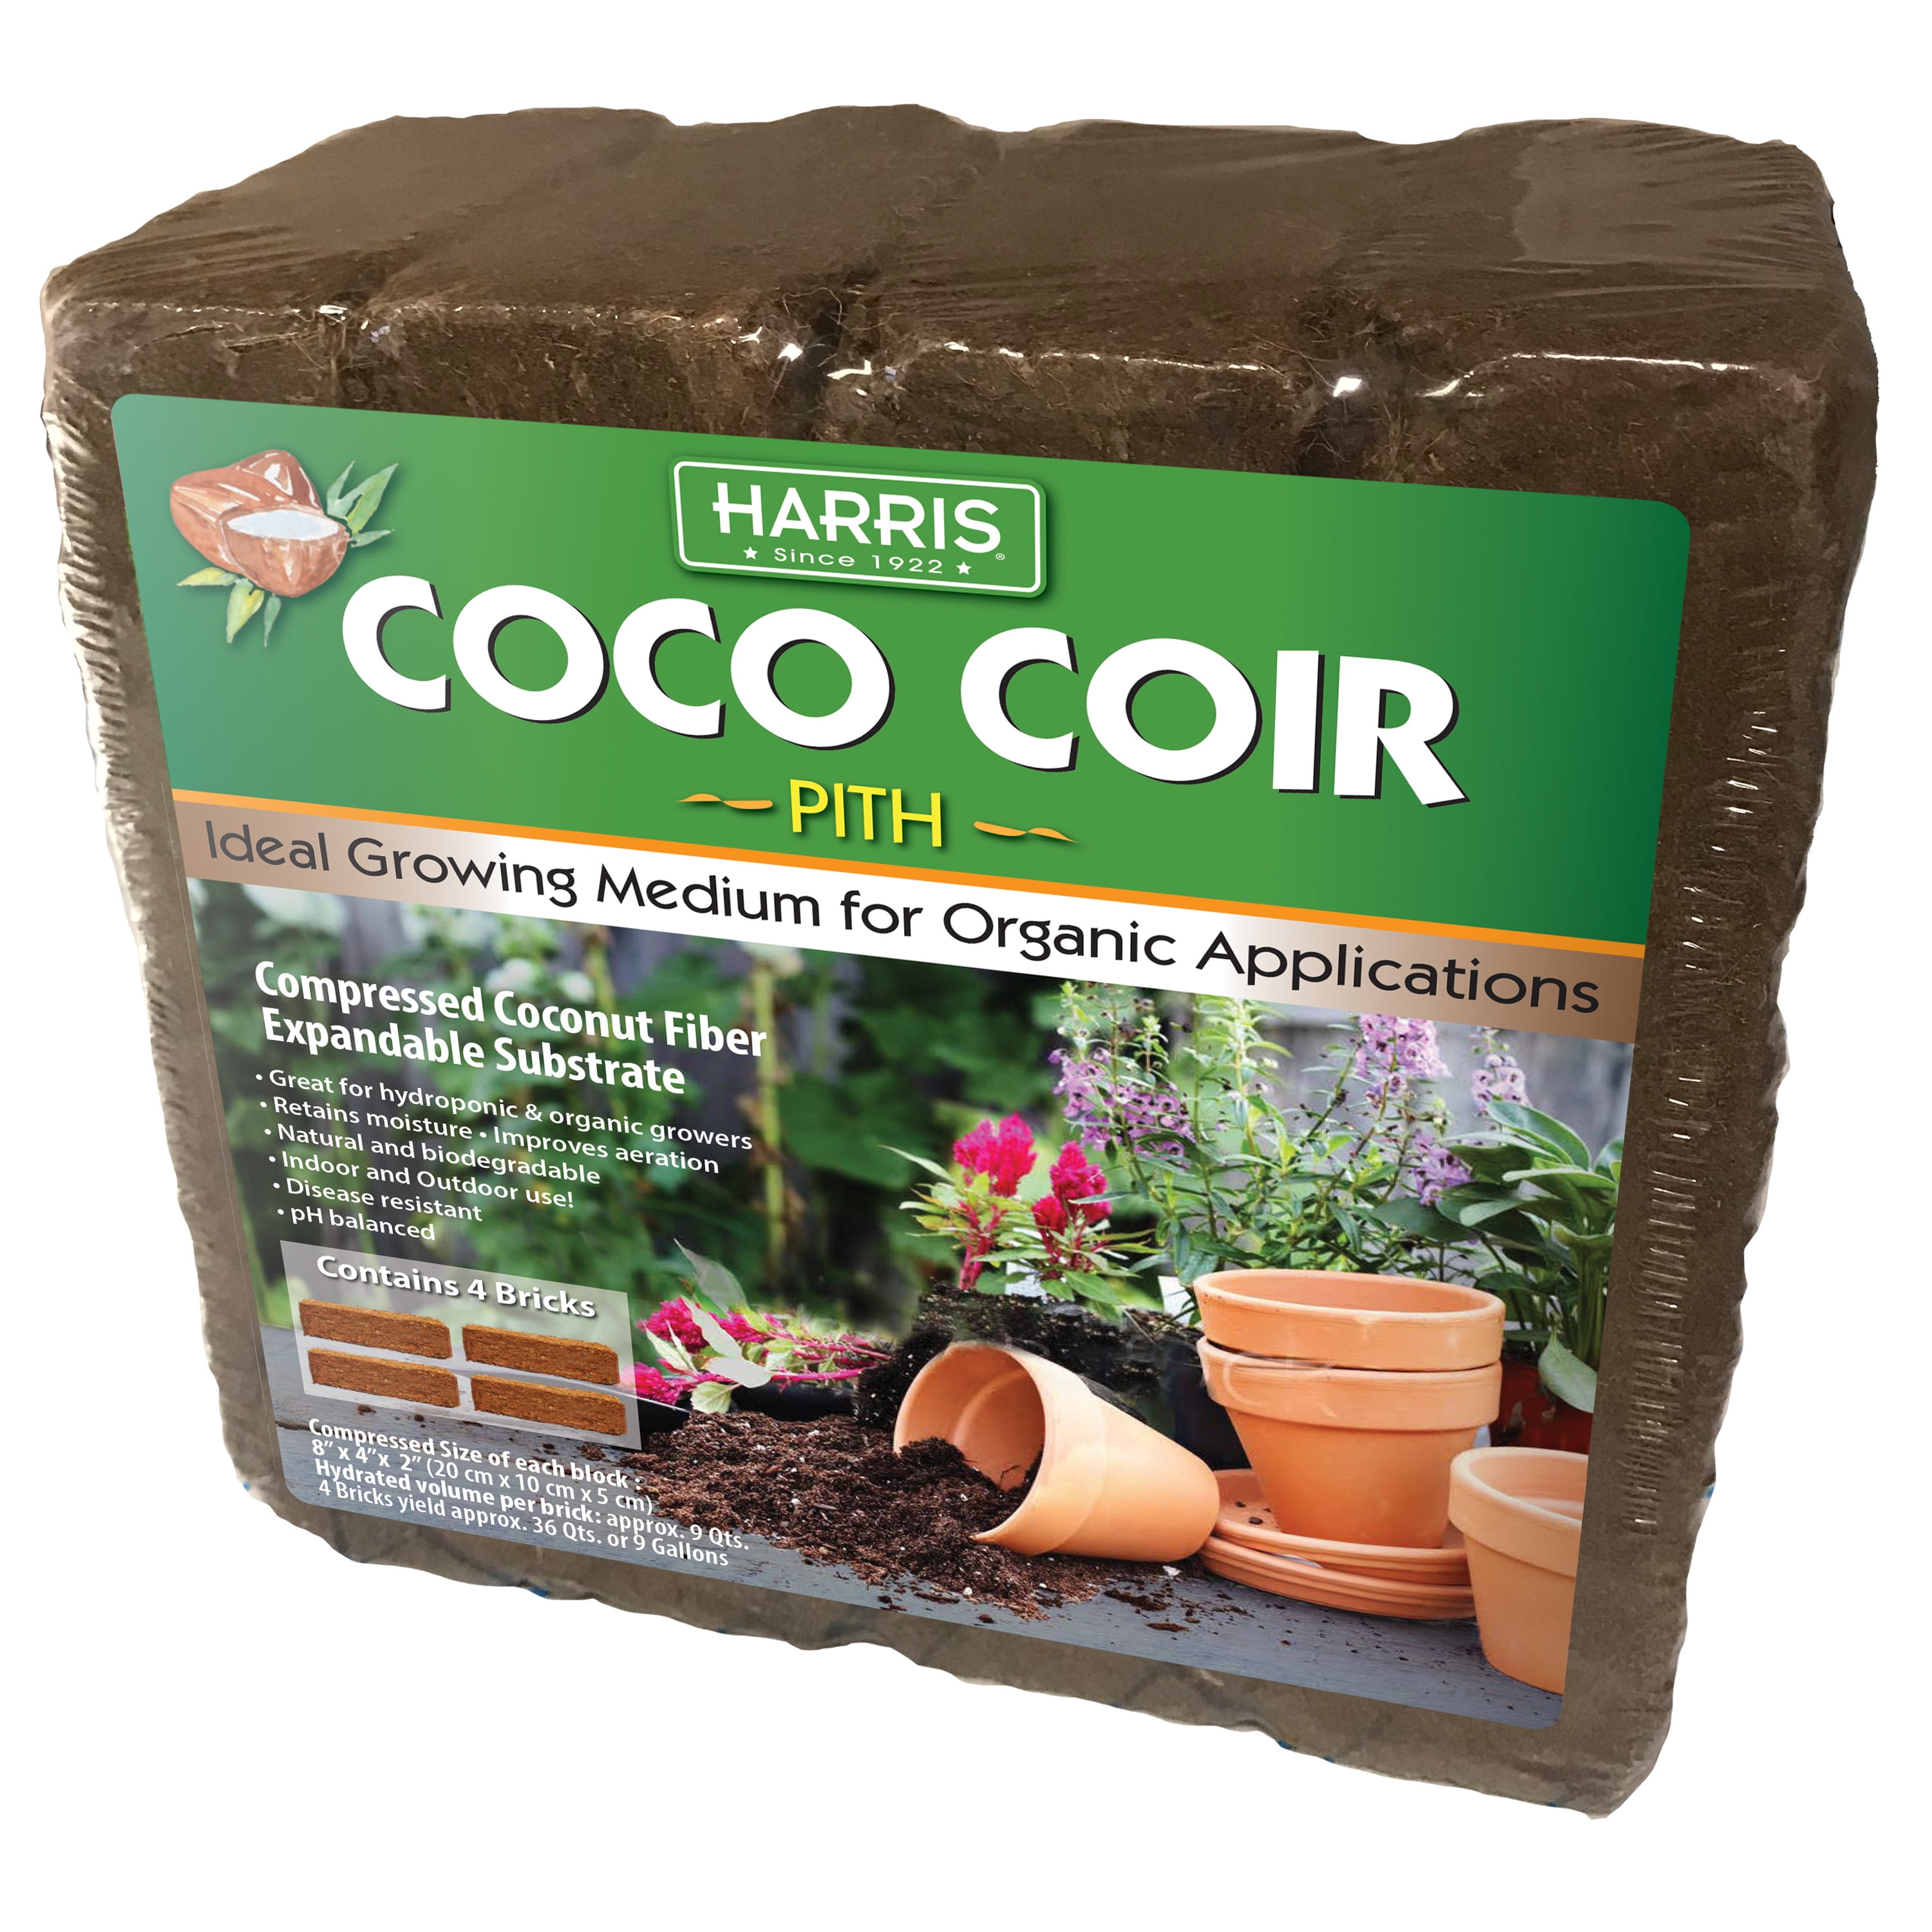 1 PICK UP 5kg Bricks  Coconut Coir Coco Coir Soil Amendment Growing Medium 